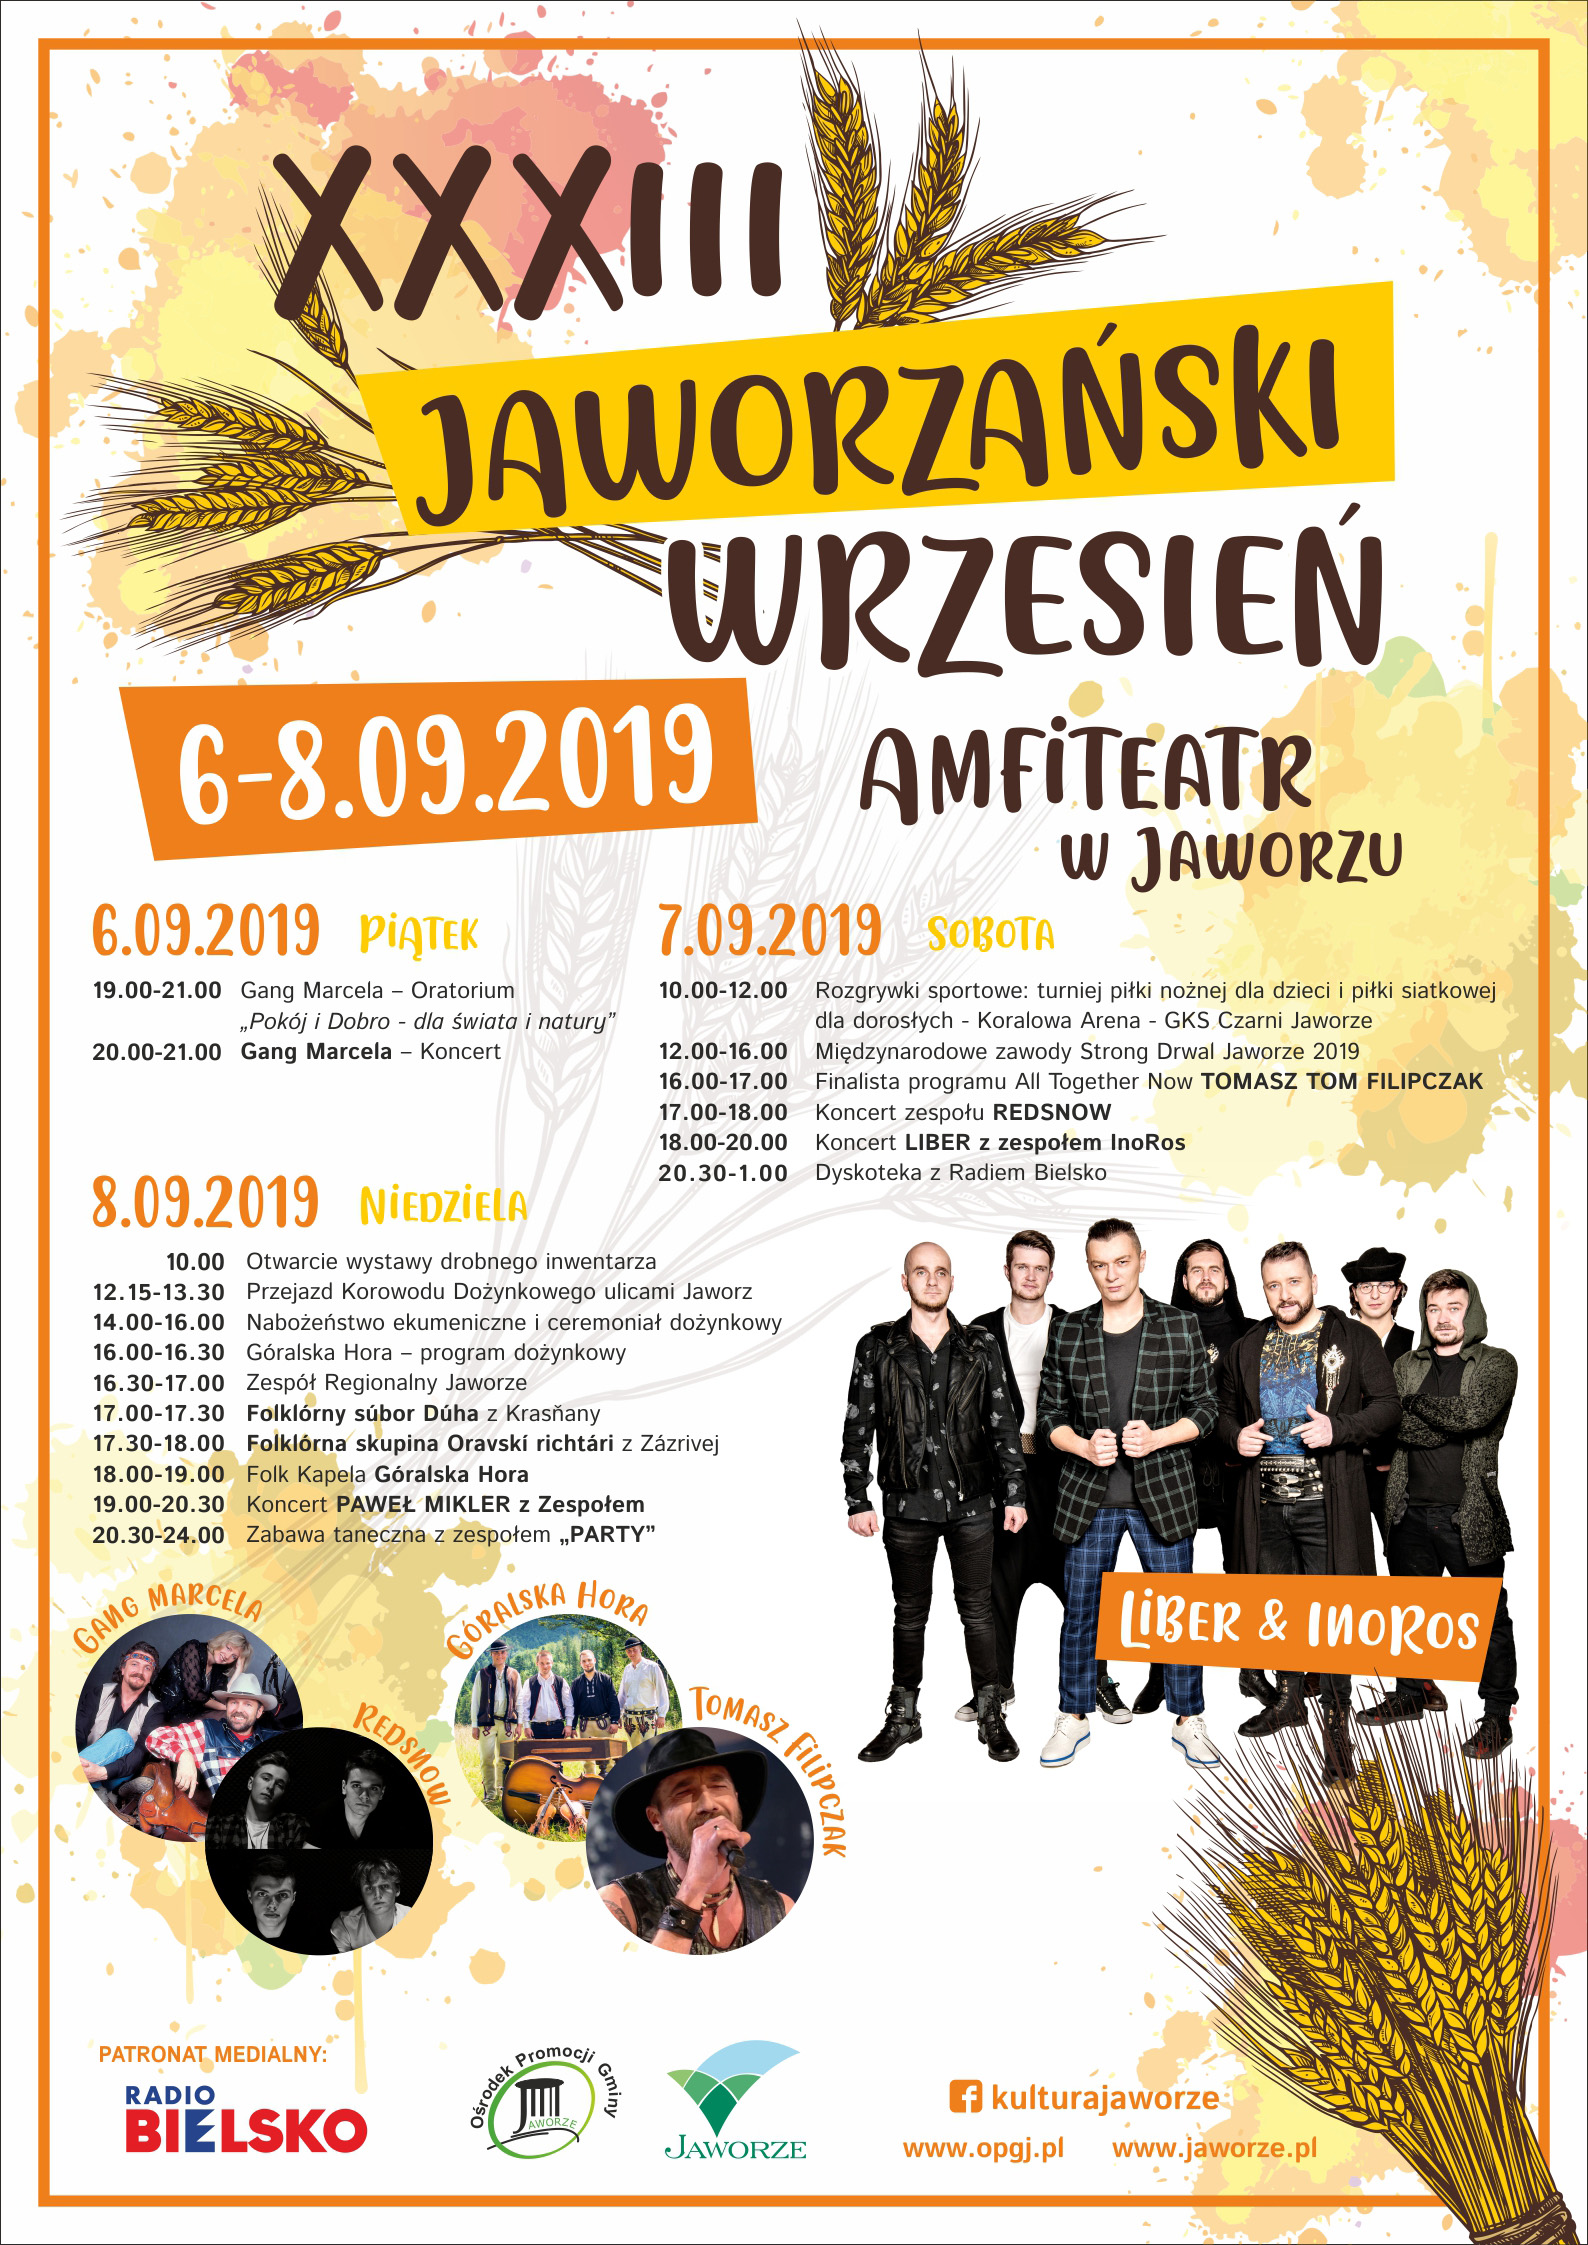 Plakat Jaworzański Wrzesień 2019